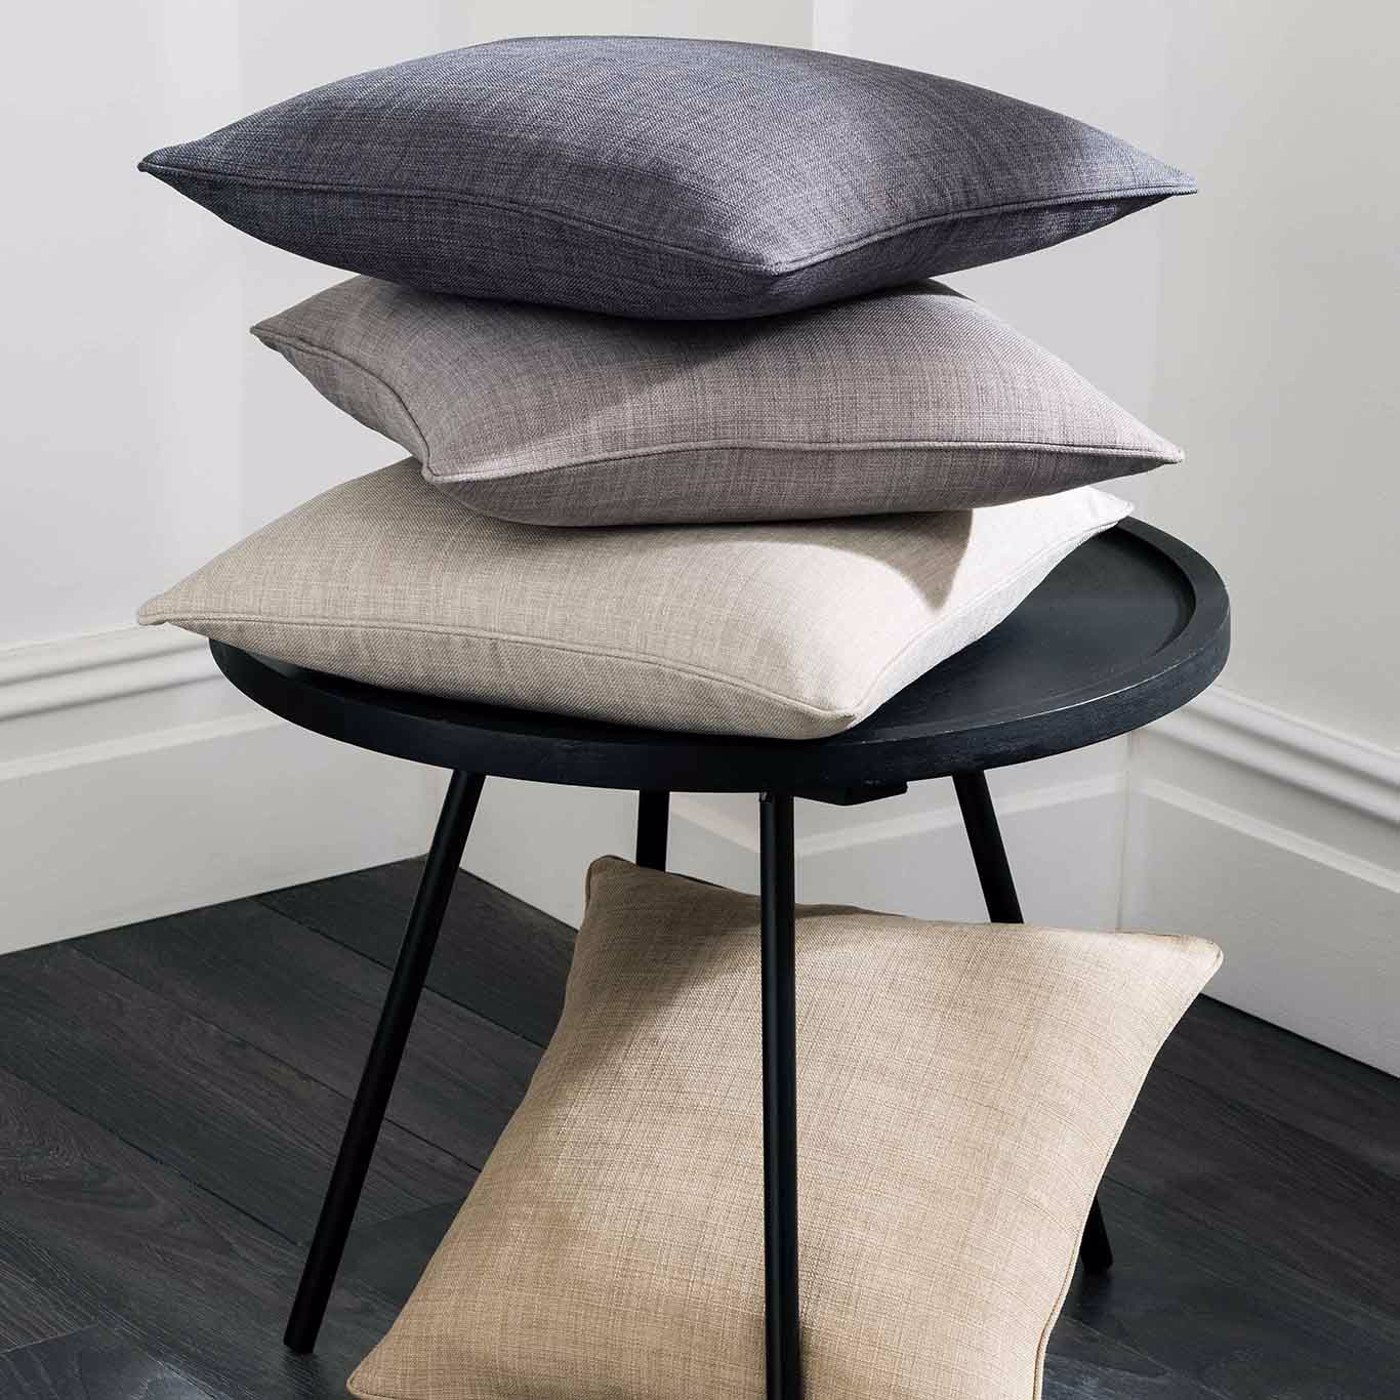 Elba Grey Cushions by STG